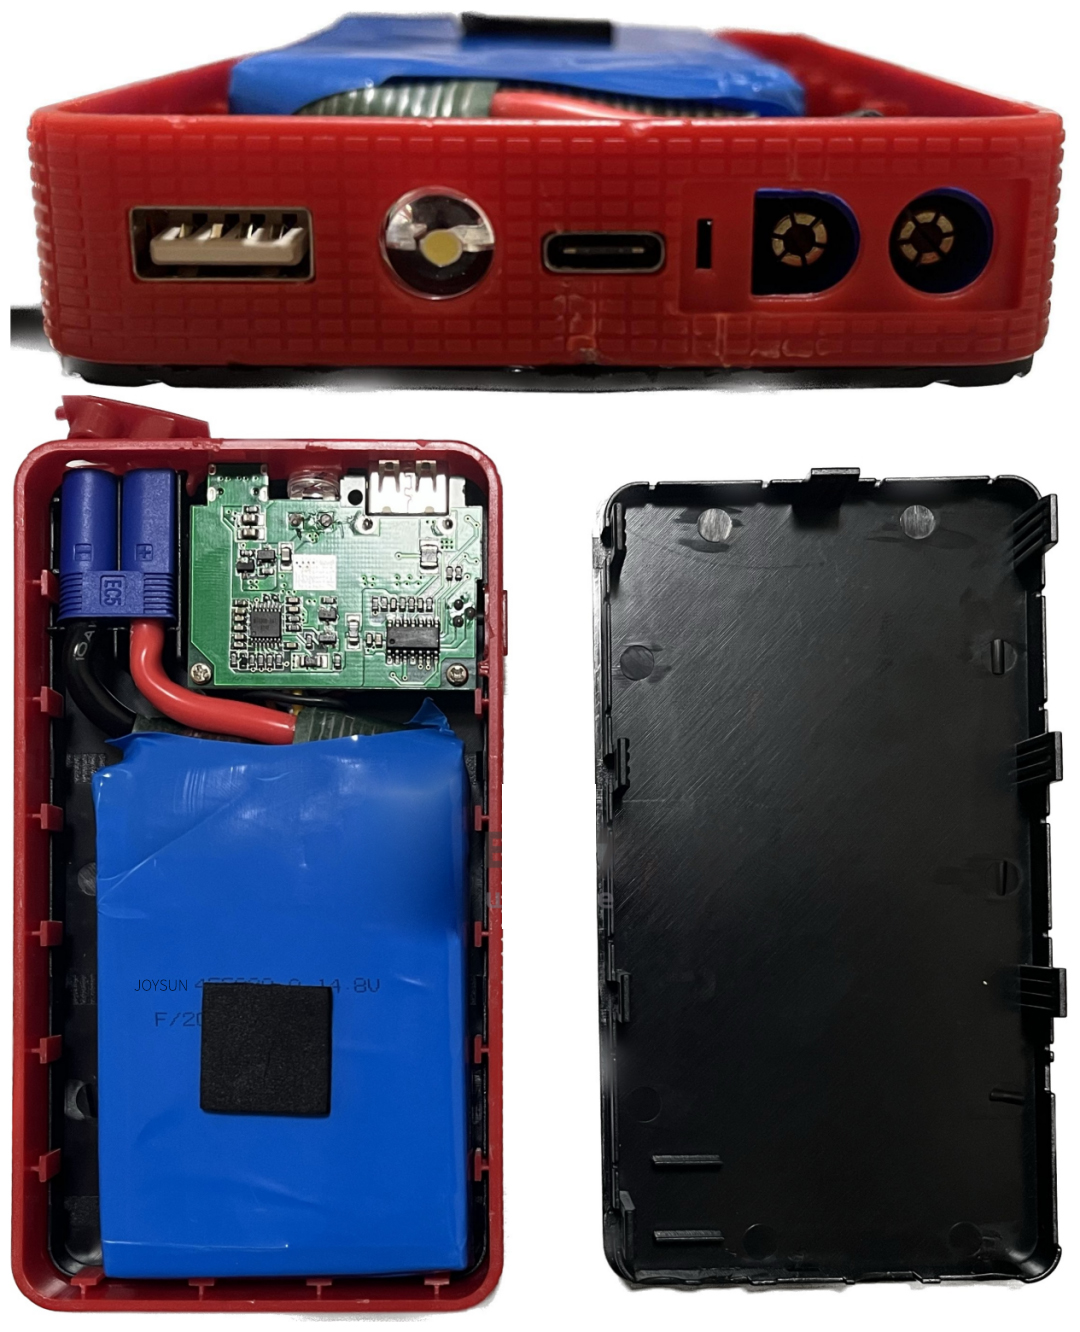 At udforske jumpstarteren med 4 små batterier kan udsende 200A stor strøm!